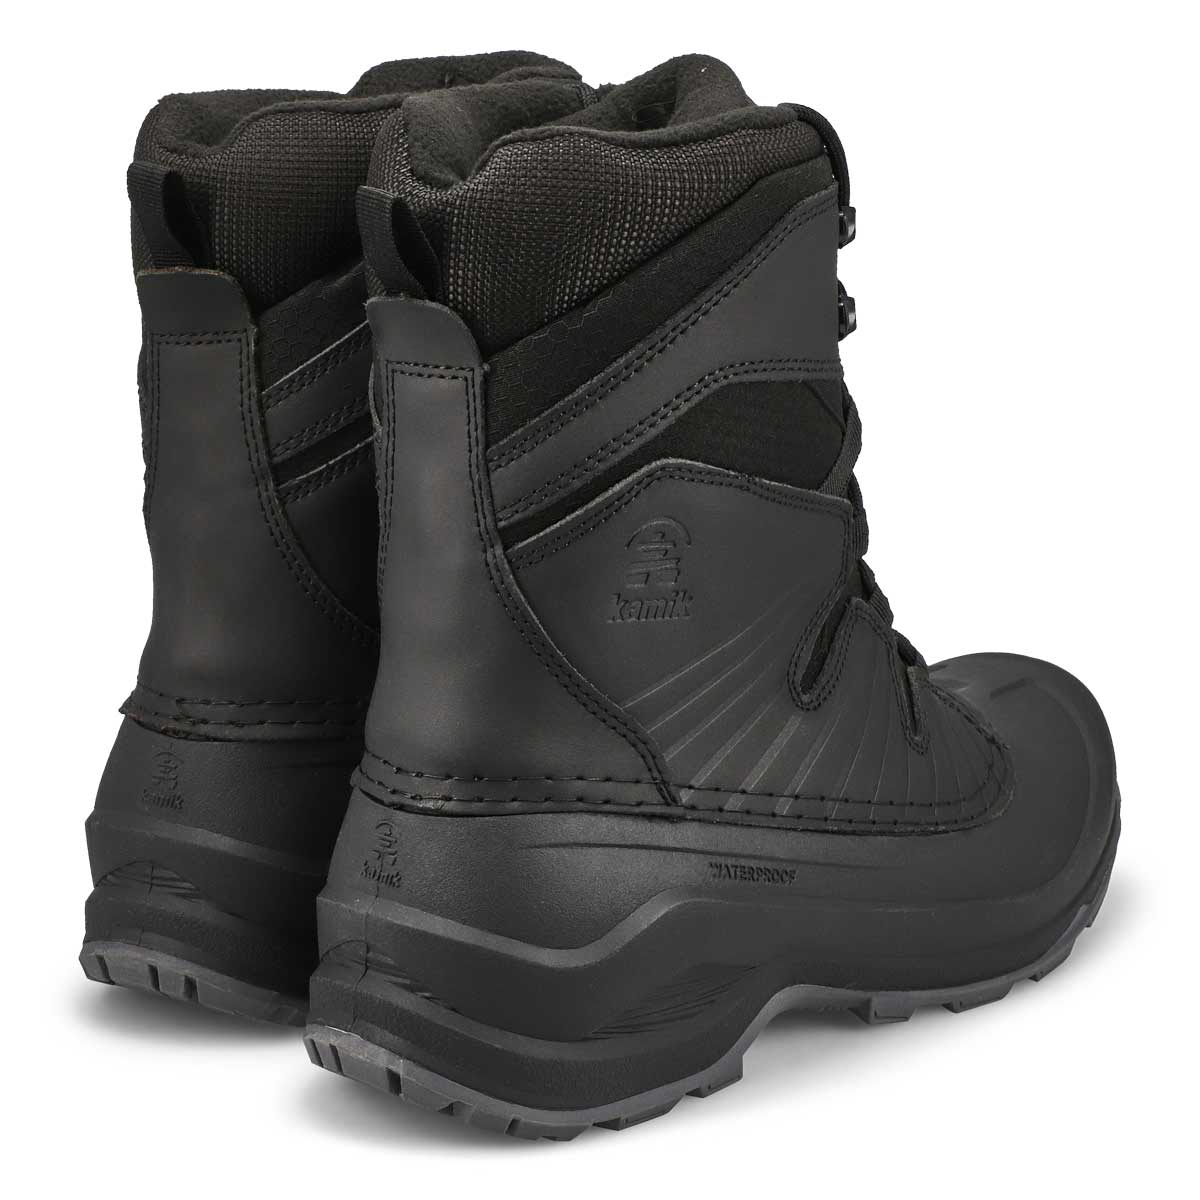 Men's Iceland Waterproof Winter Boot - Black